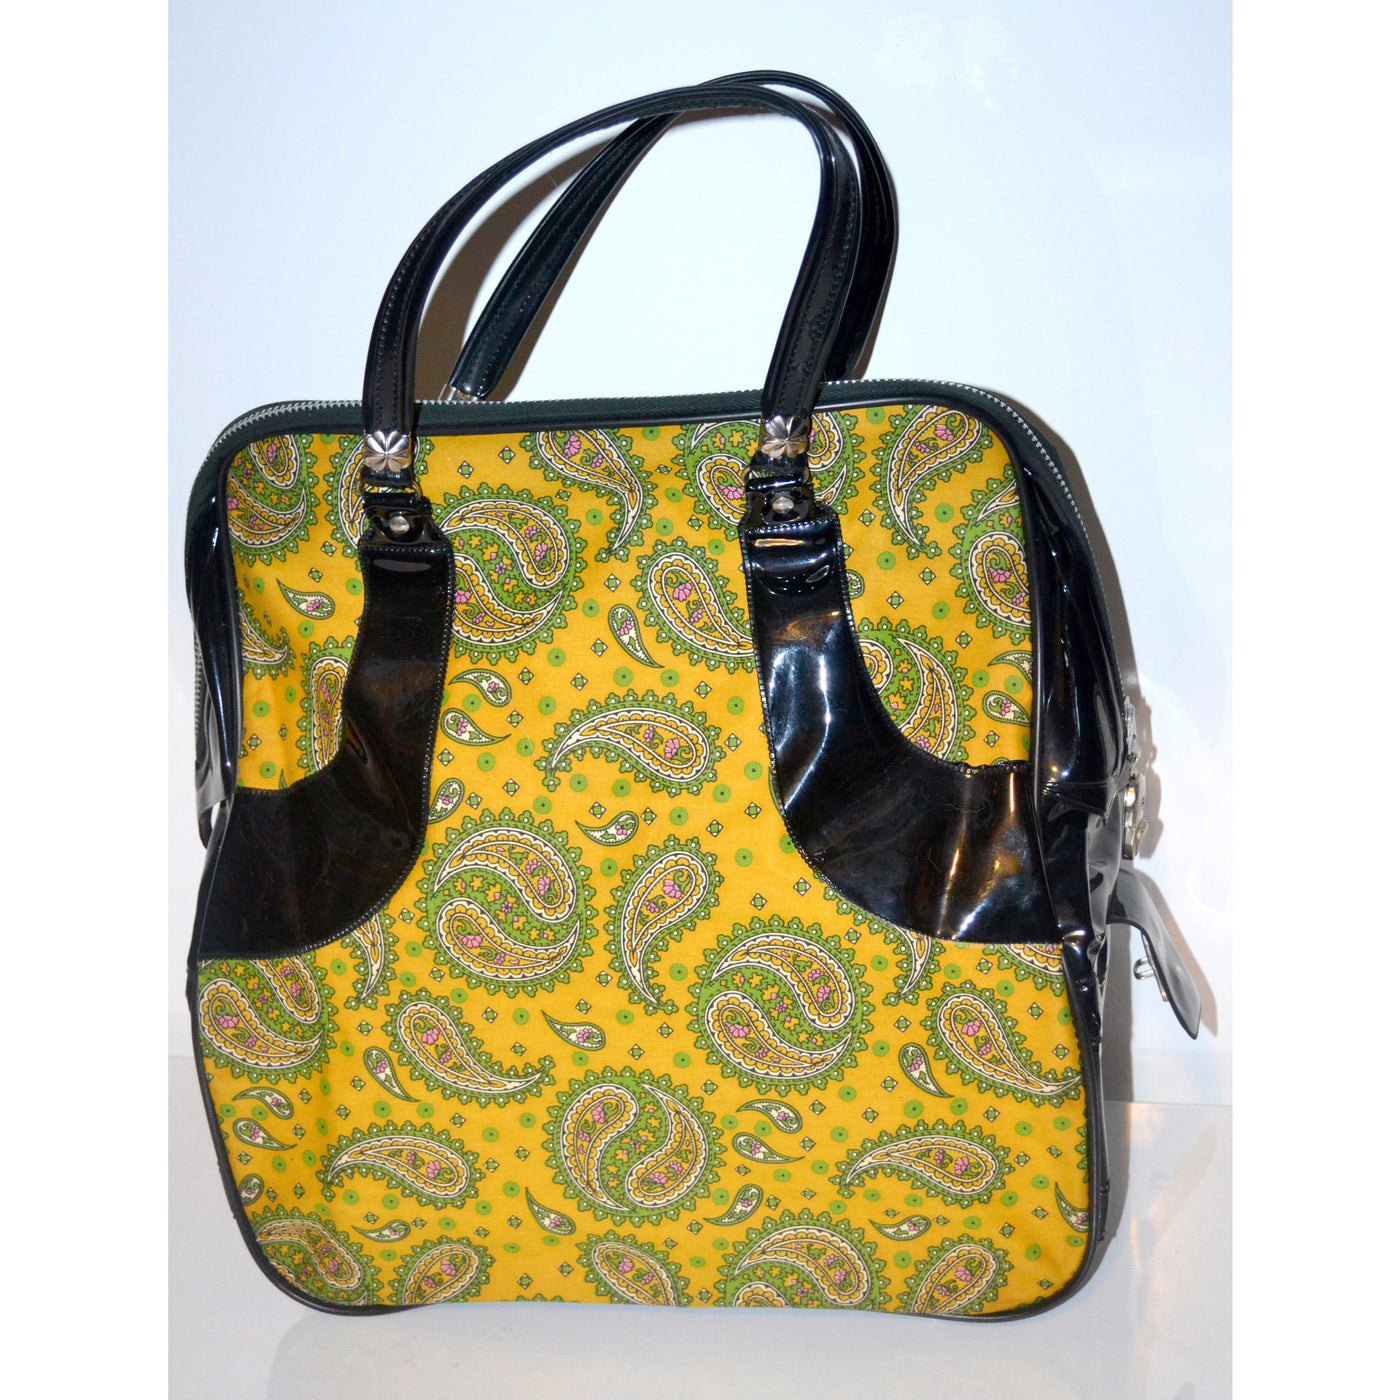 Vintage Yellow Mod Paisley & High Gloss Travel Bag